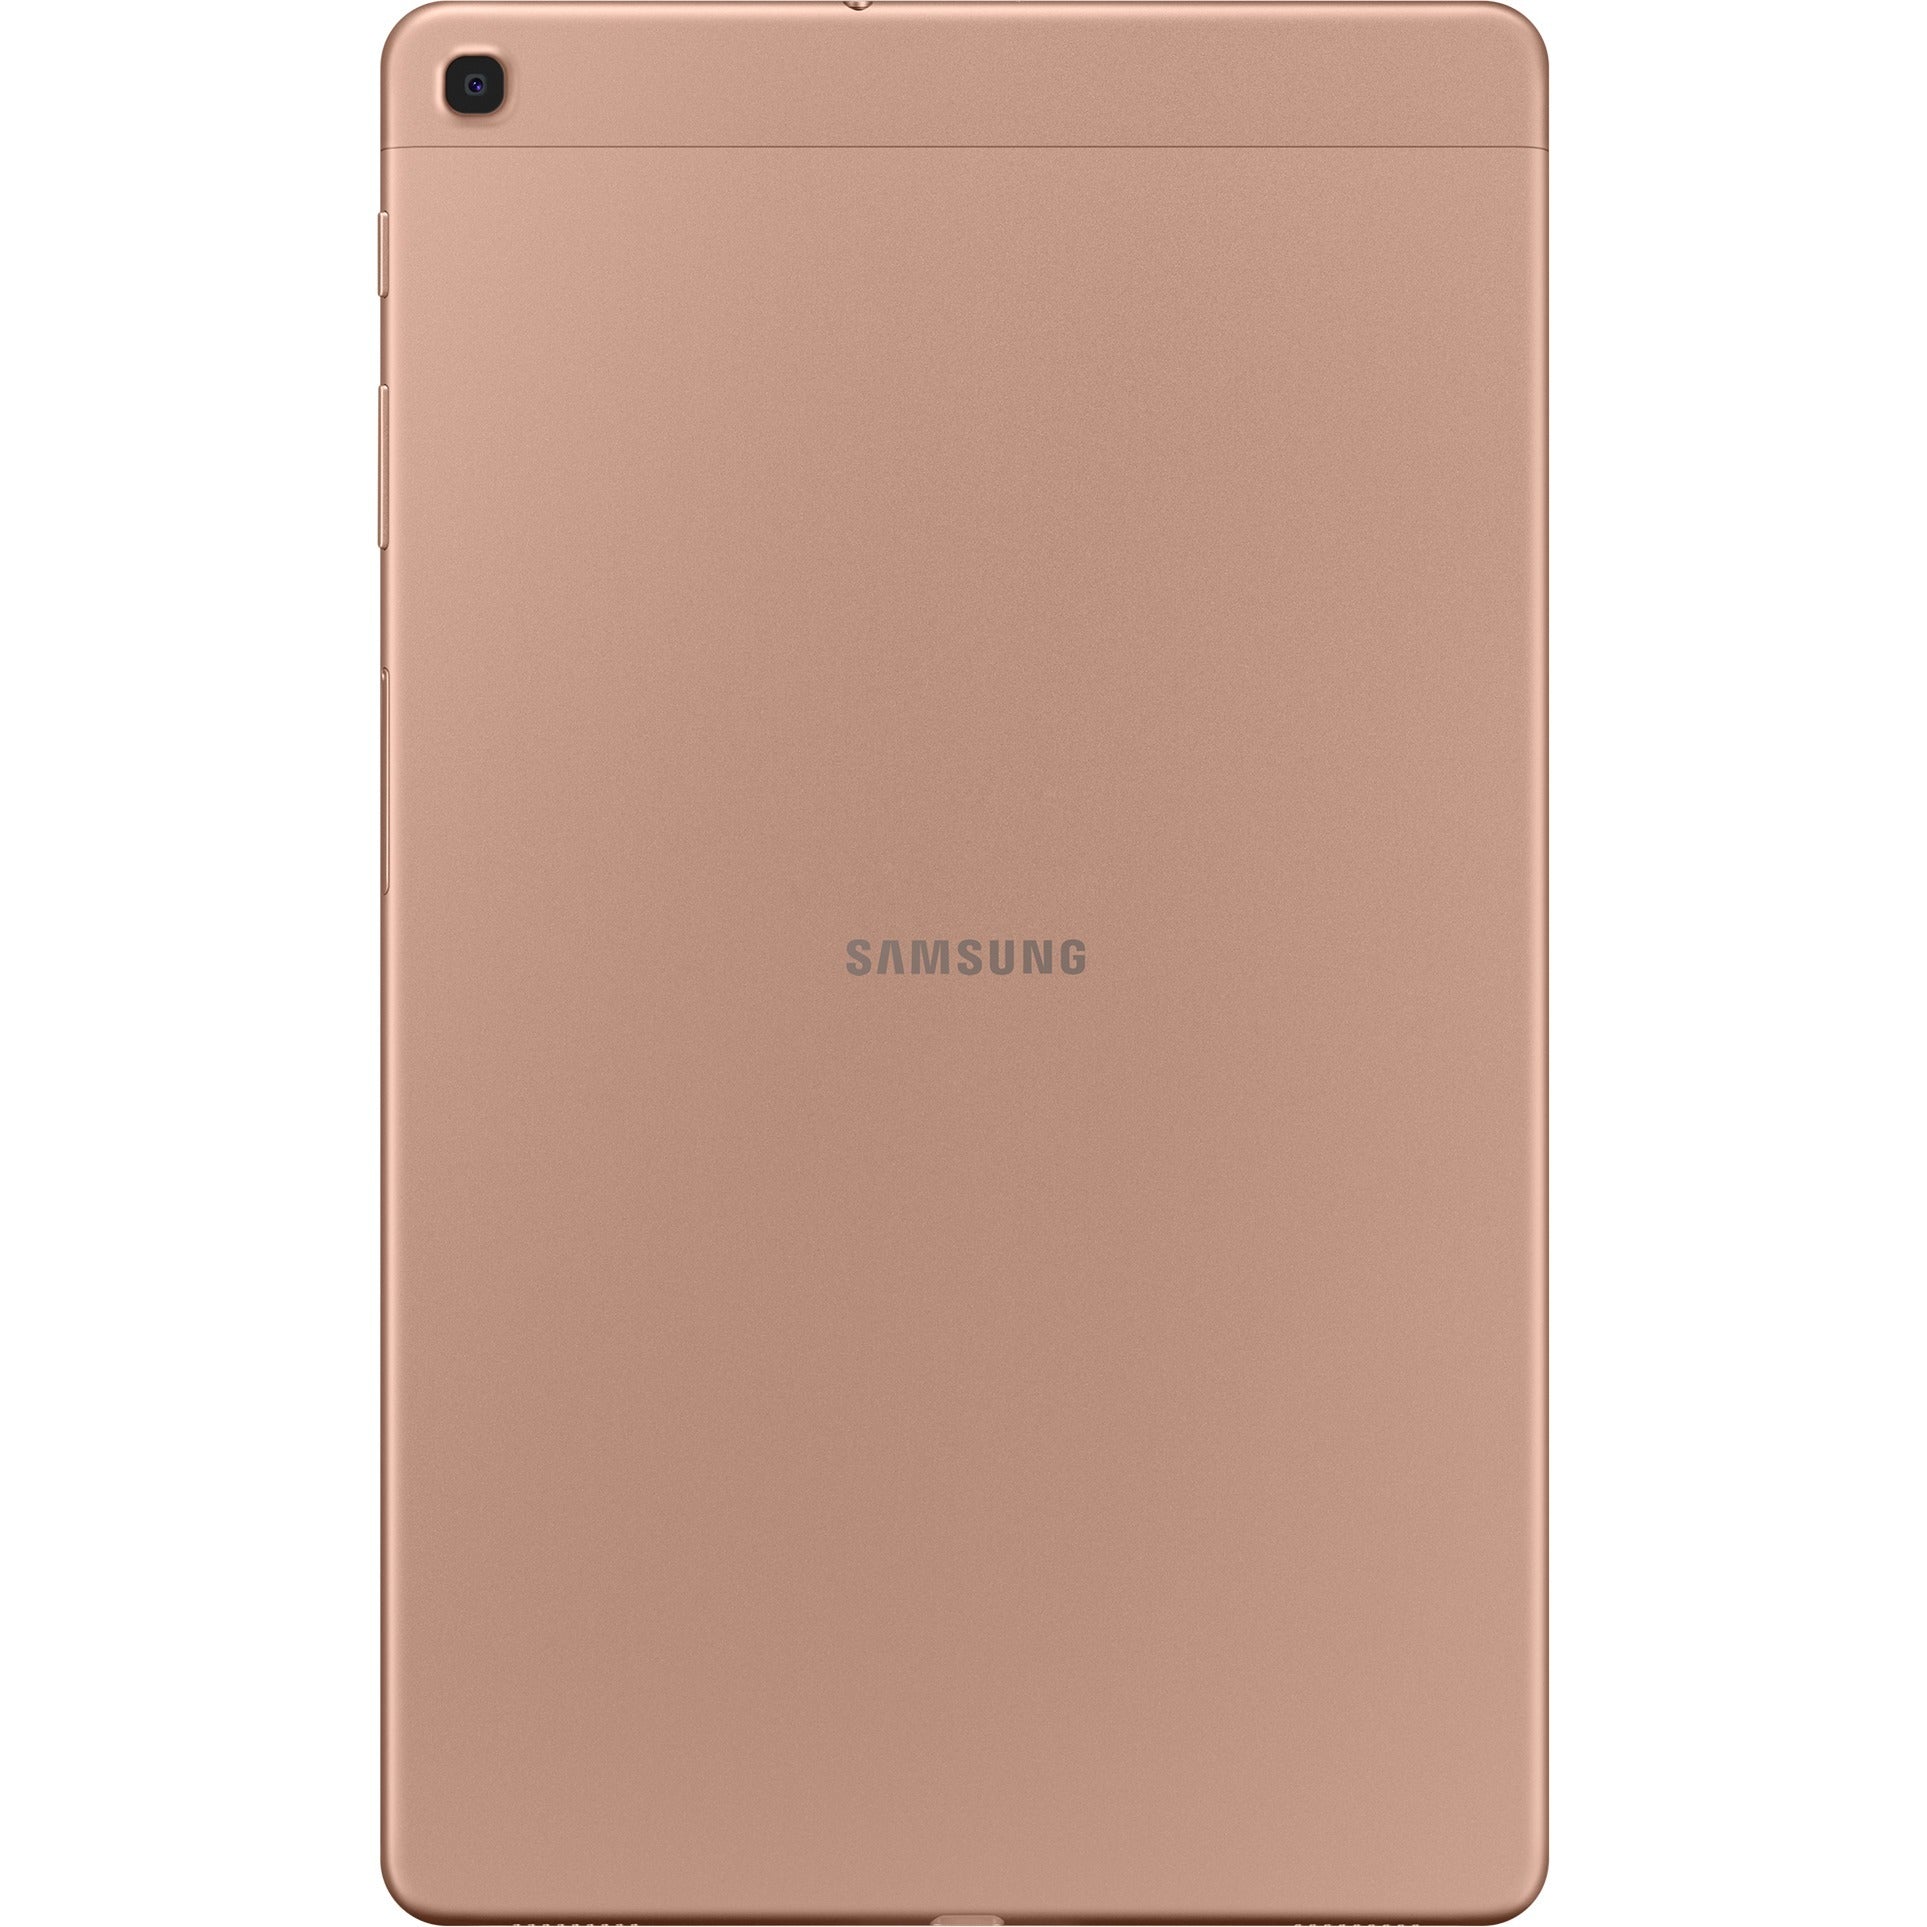 Samsung Galaxy Tab A, SM-T510, 10.1